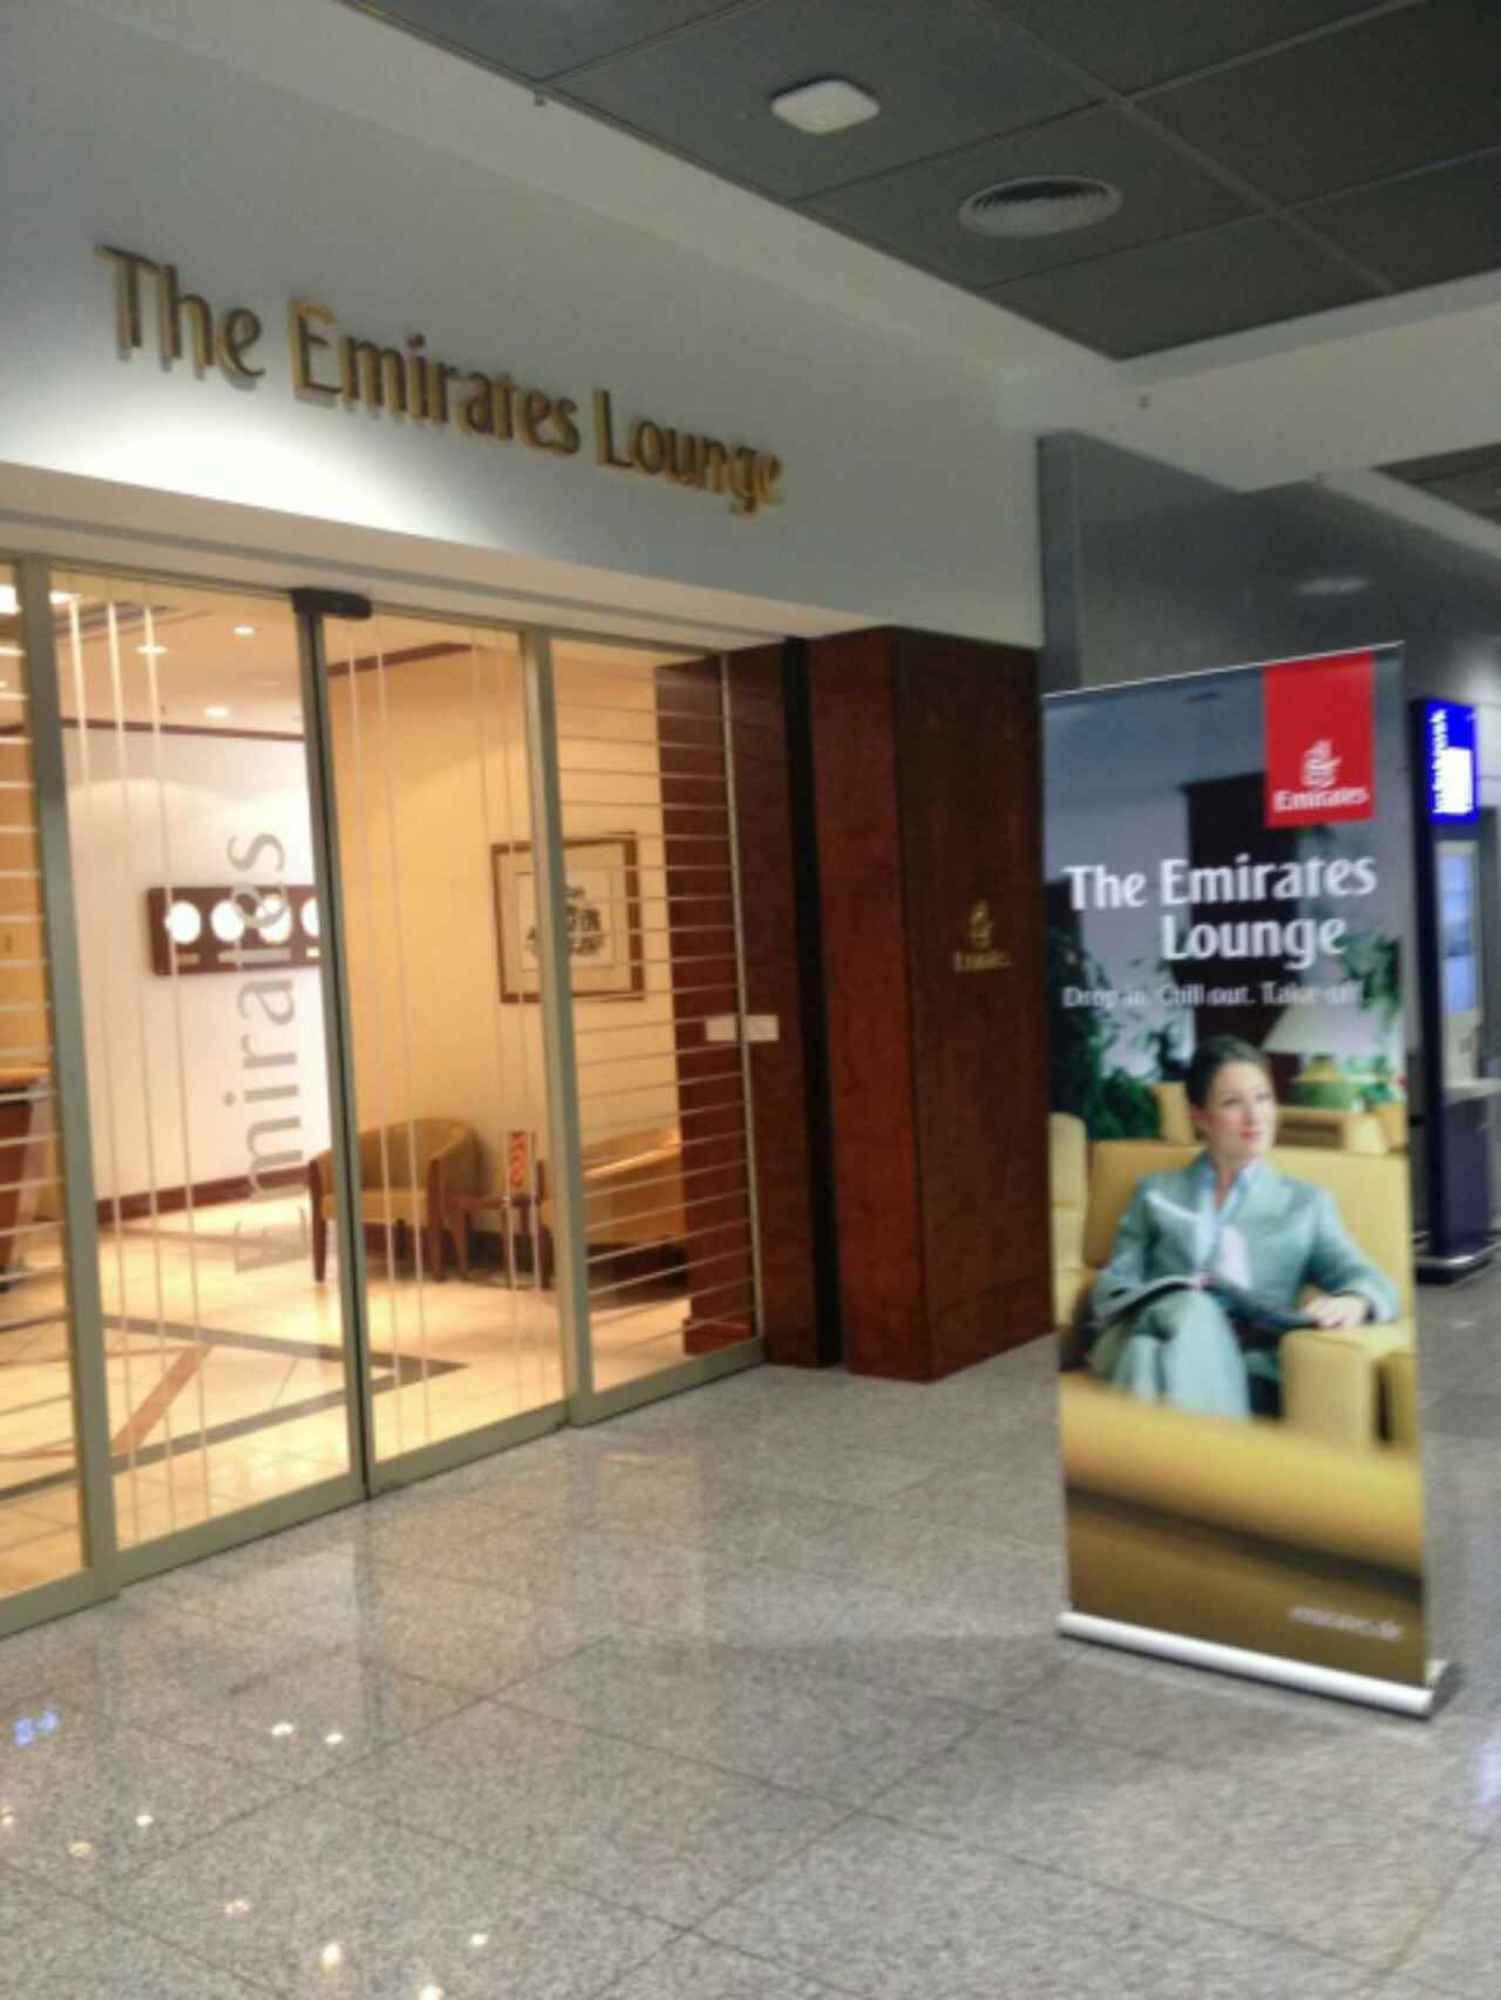 The Emirates Lounge image 4 of 8